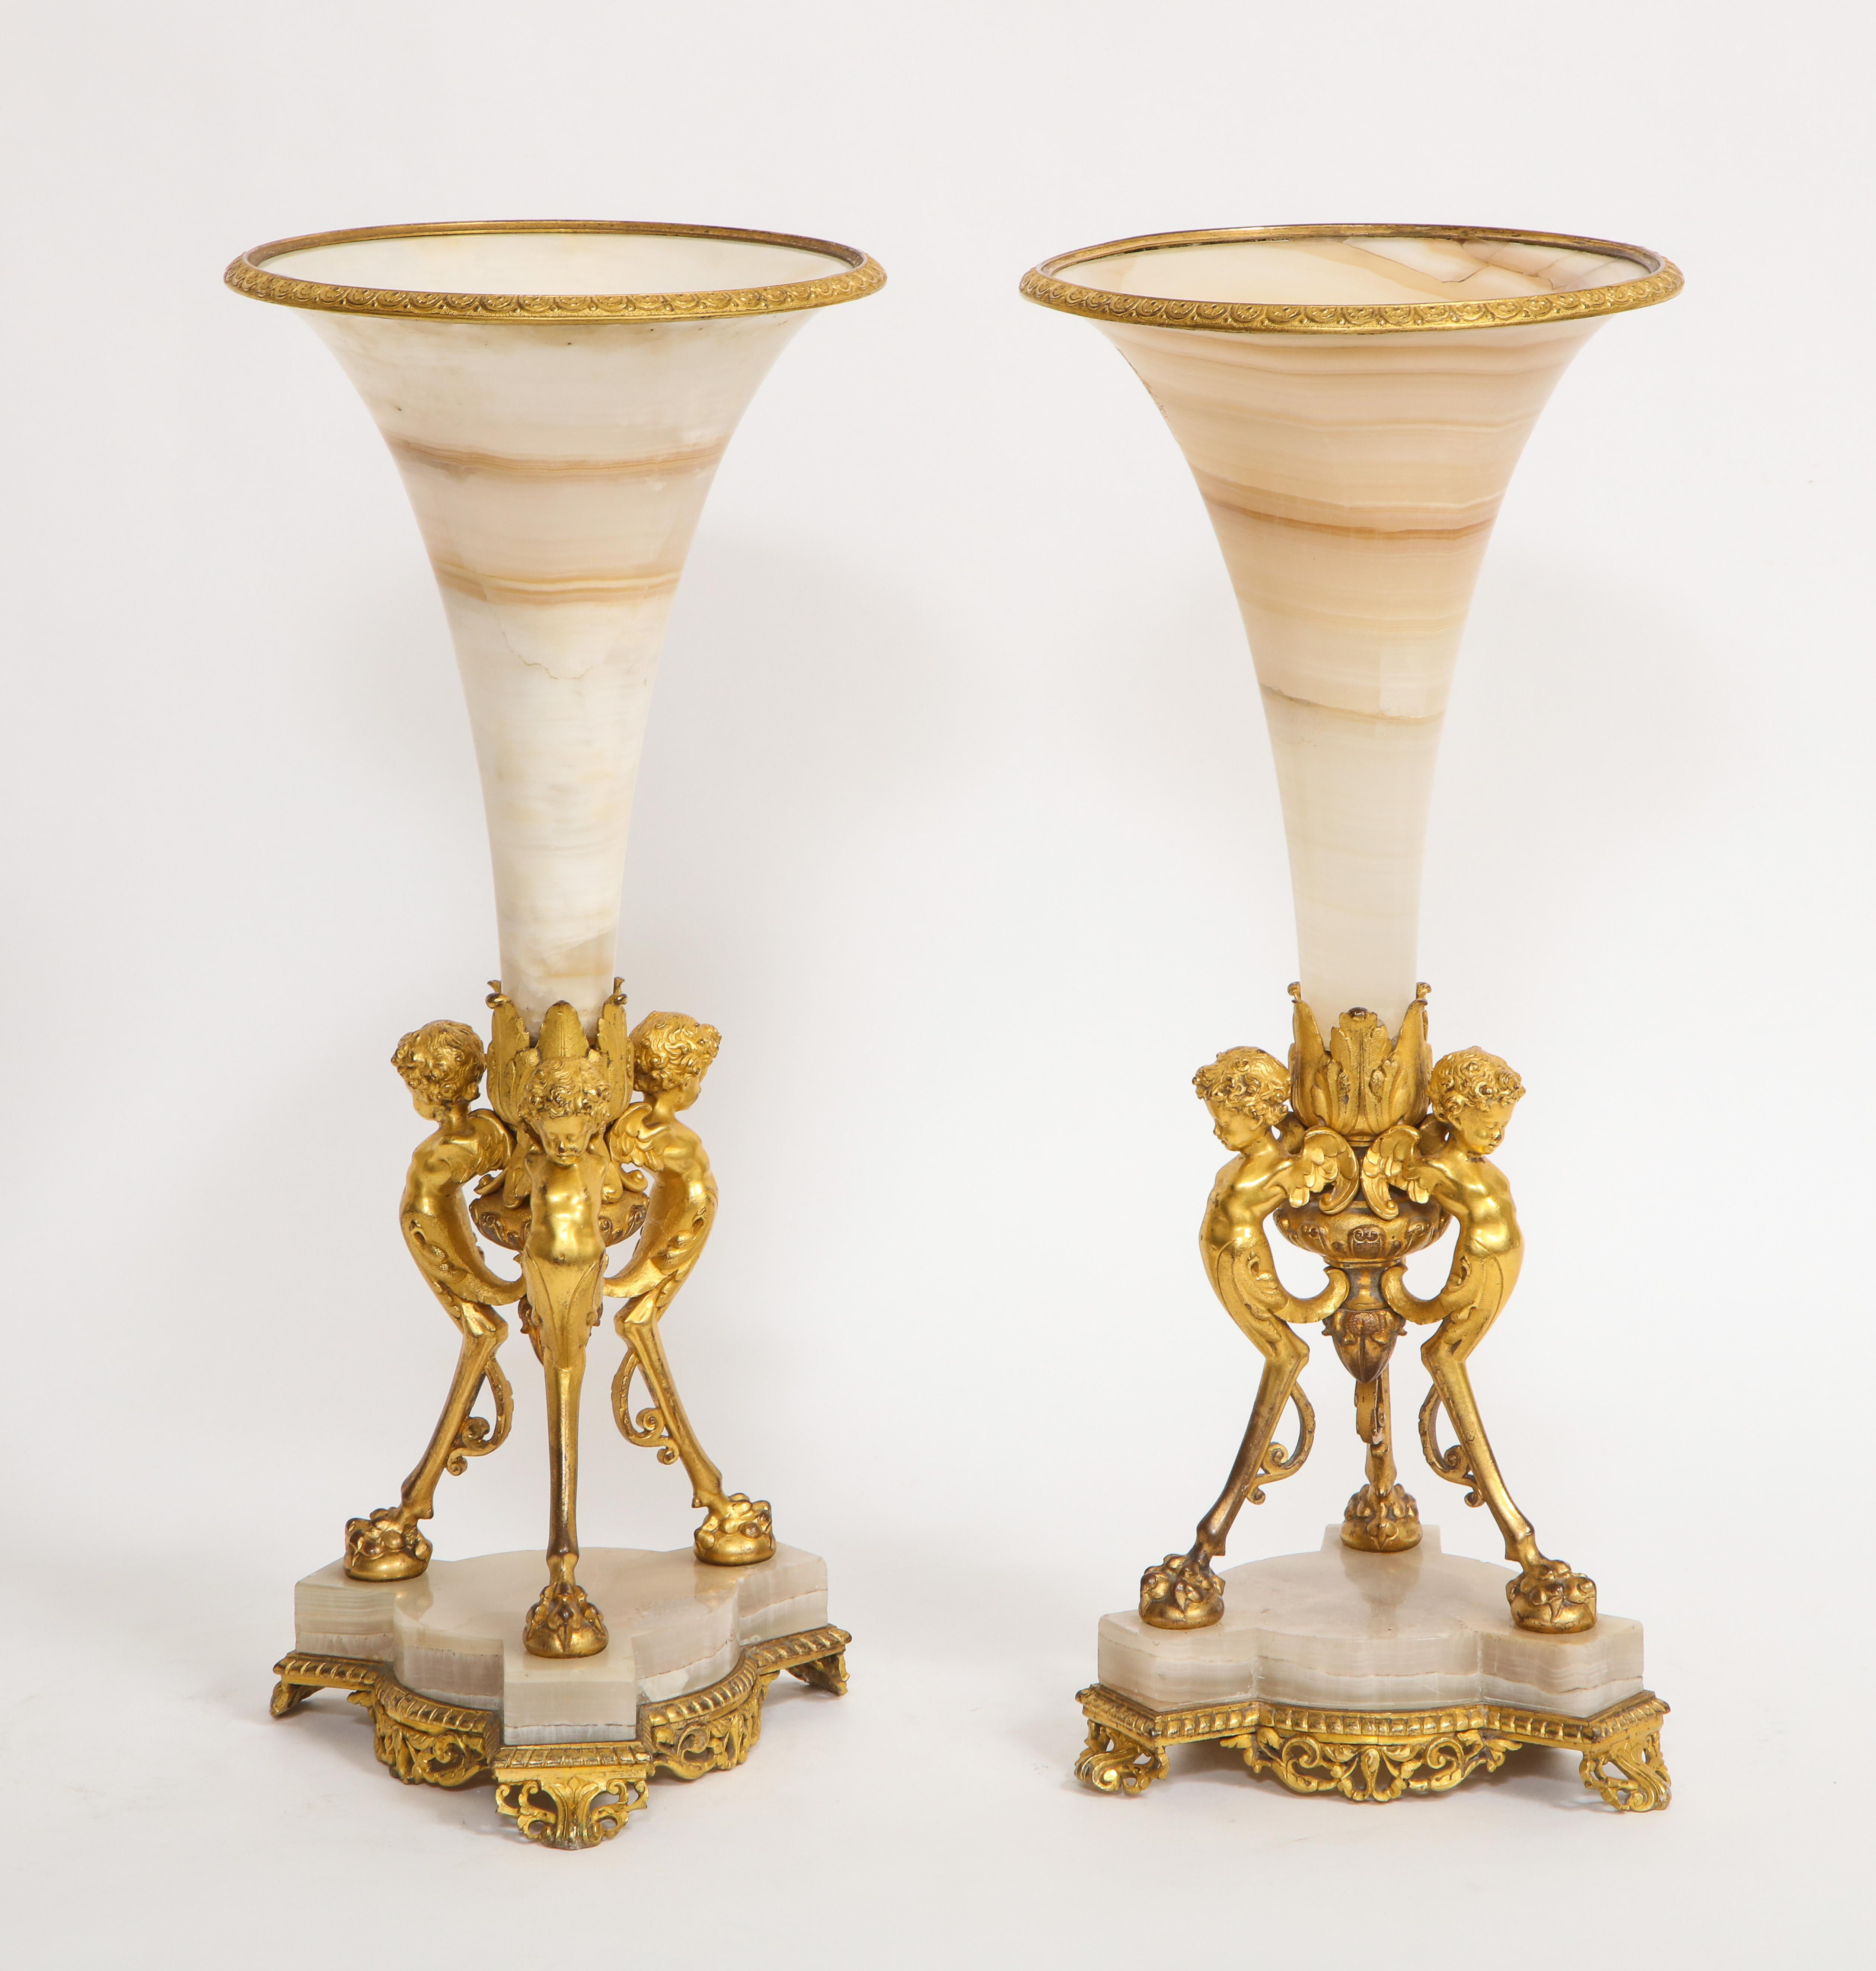 Fabuleuse paire de vases trompettes en albâtre, montés en bronze doré, du XIXe siècle. Chaque vase égyptien en albâtre est magnifiquement sculpté et poli à la main avec le plus fin travail de la pierre. Les vases sont montés sur des montures en